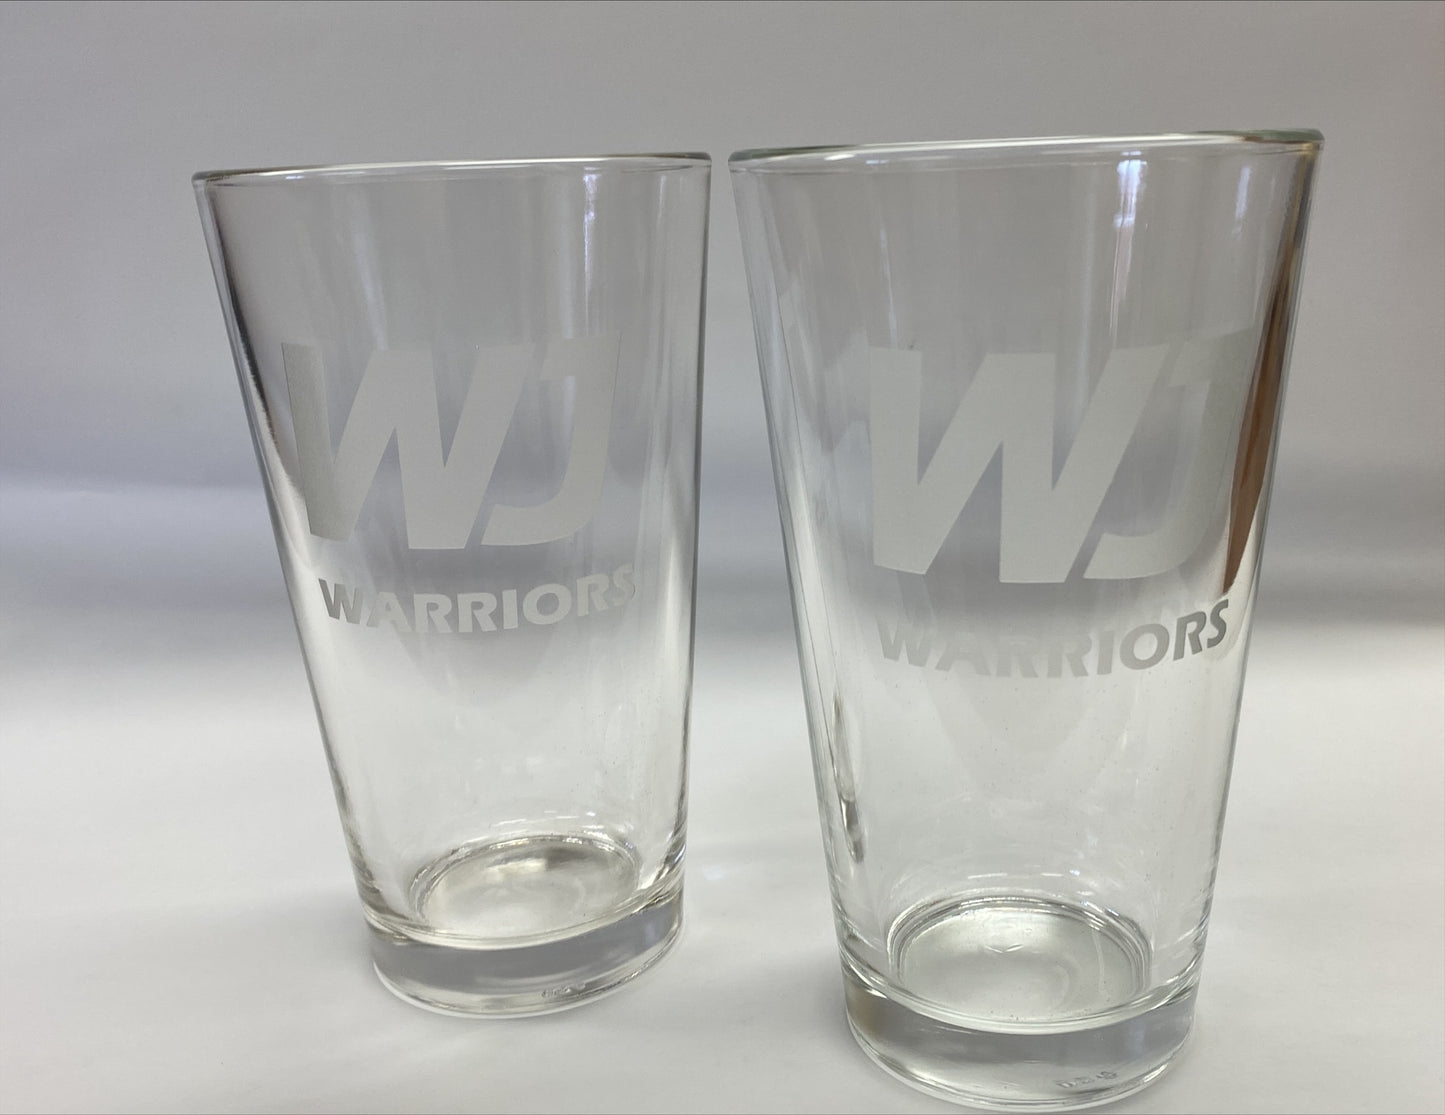 WJ Warriors Set of 2 Deep Etched Pub Glasses